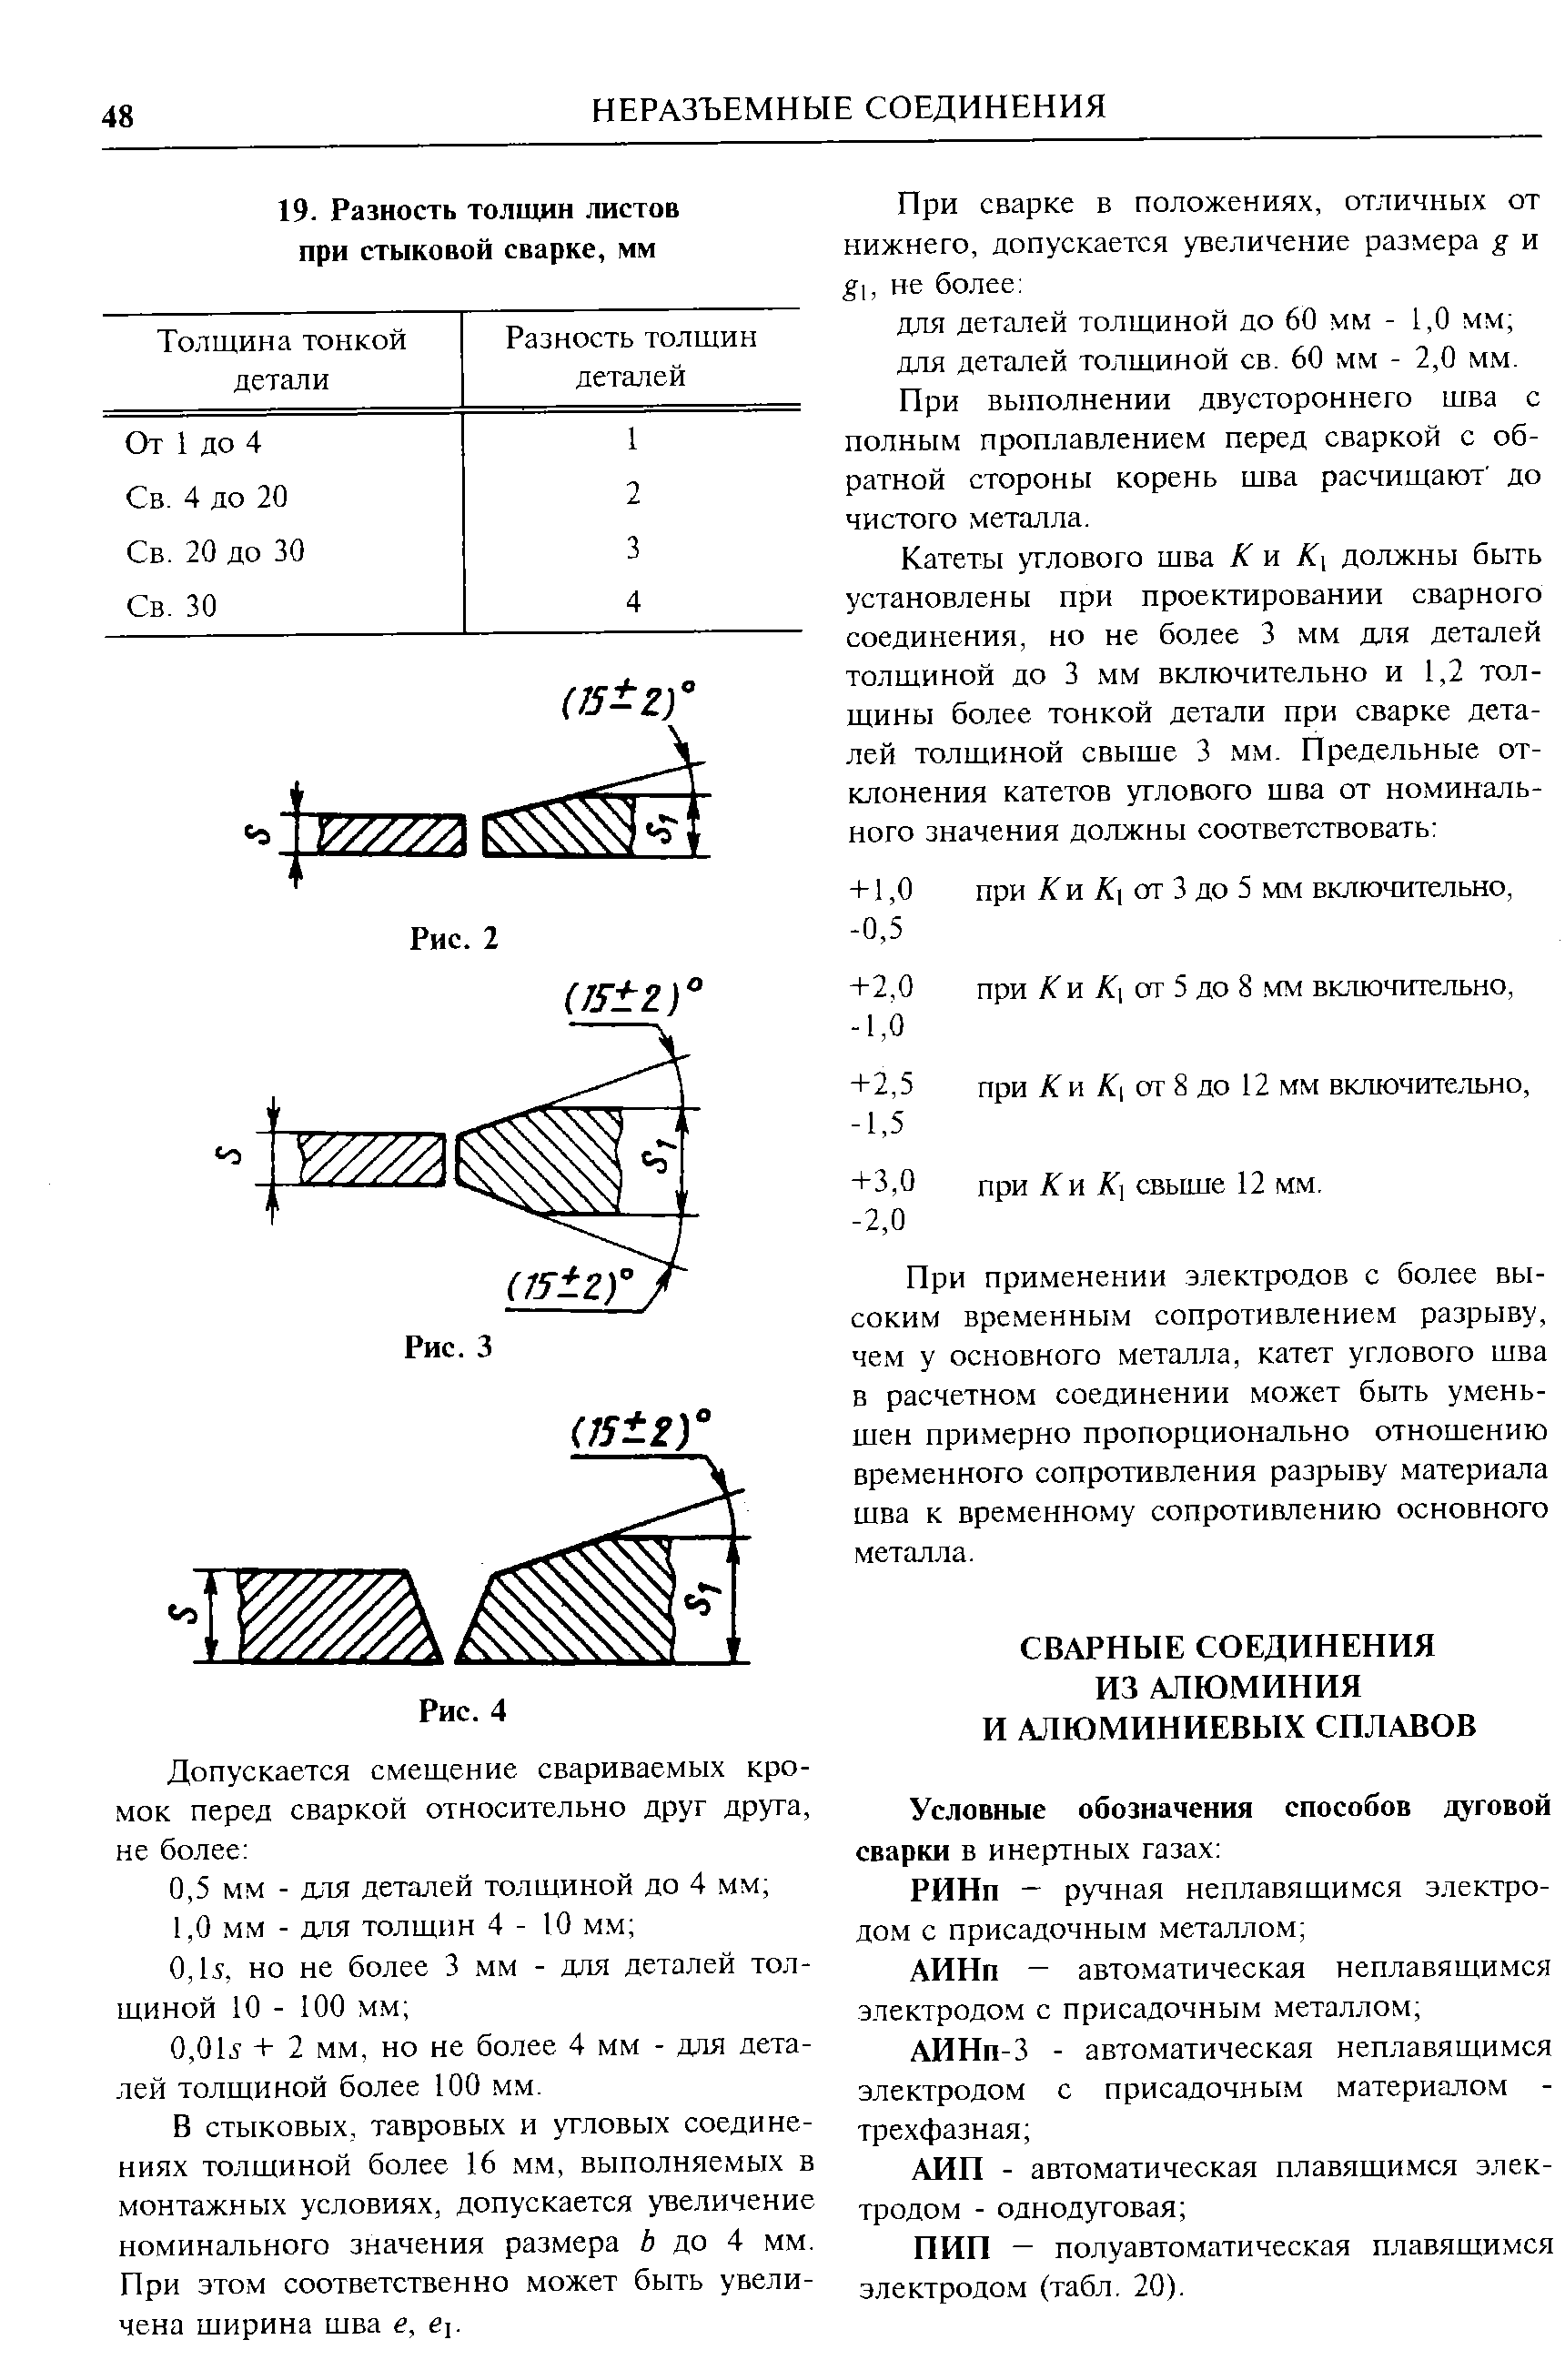 ПИП — полуавтоматическая плавящимся электродом (табл. 20).
